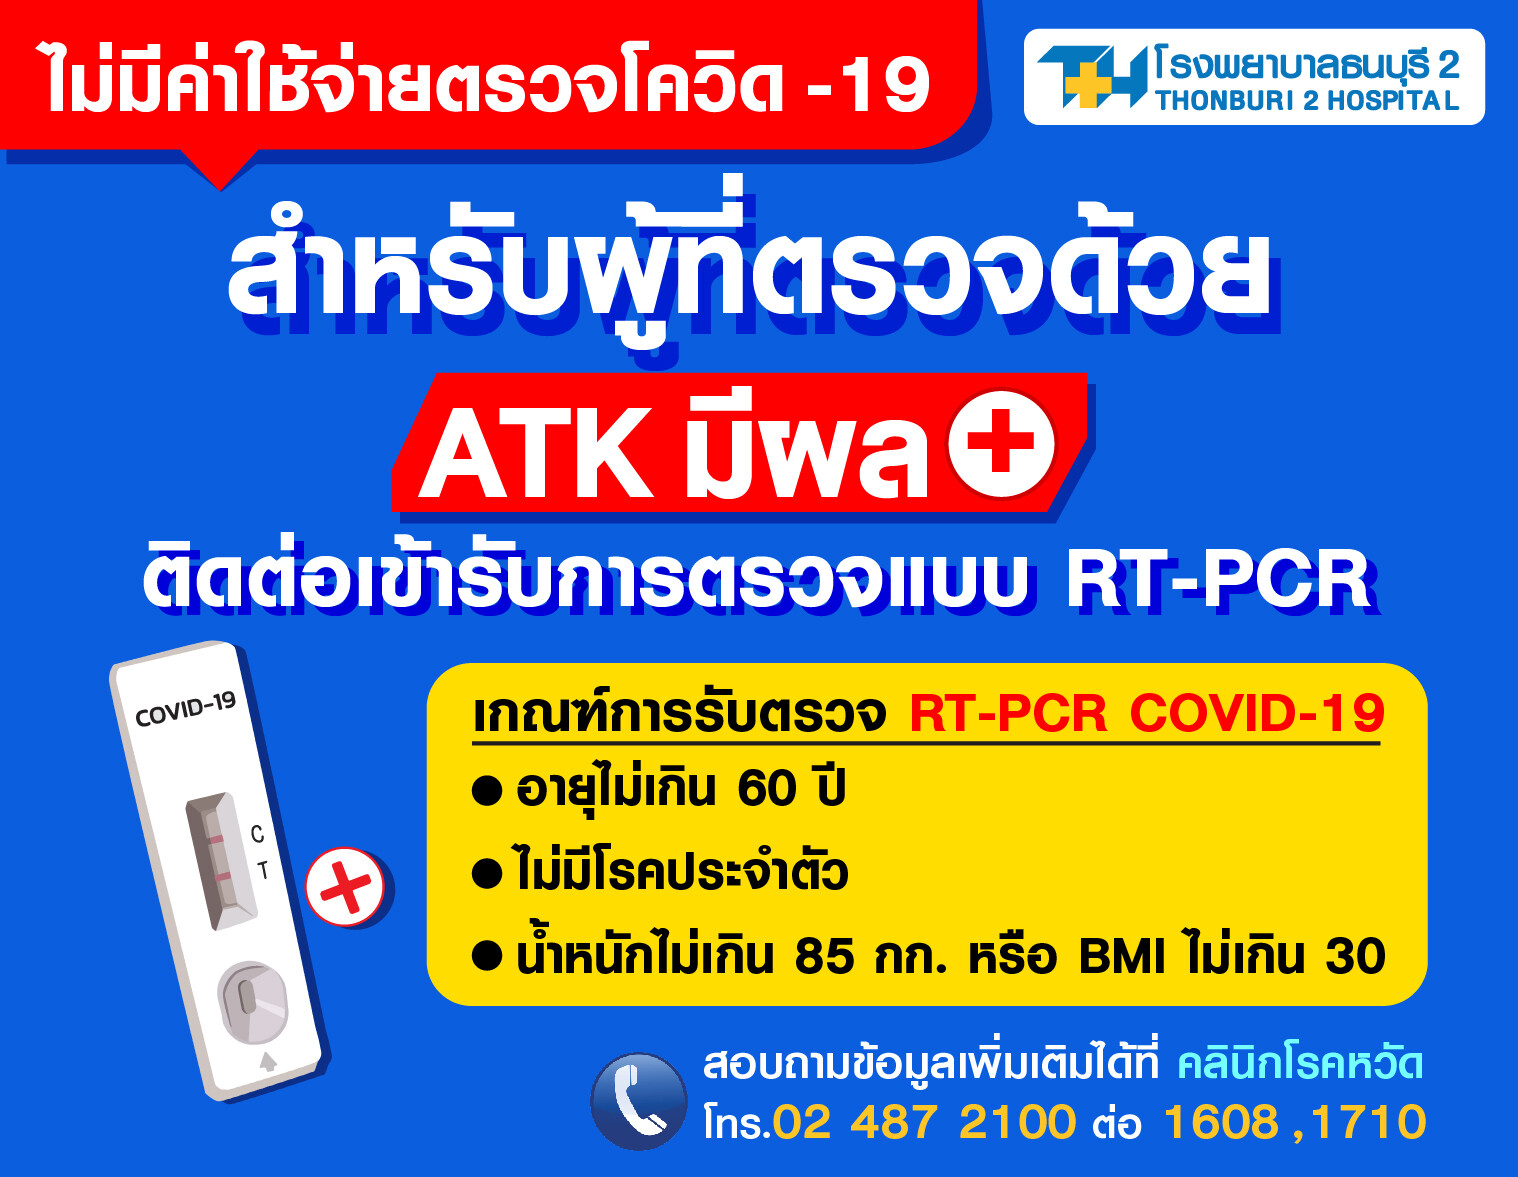 รพ.ธนบุรี2 บริการตรวจRT-PCR สำหรับผู้ที่ตรวจด้วยATKมีผล+ ไม่เสียค่าใช้จ่าย